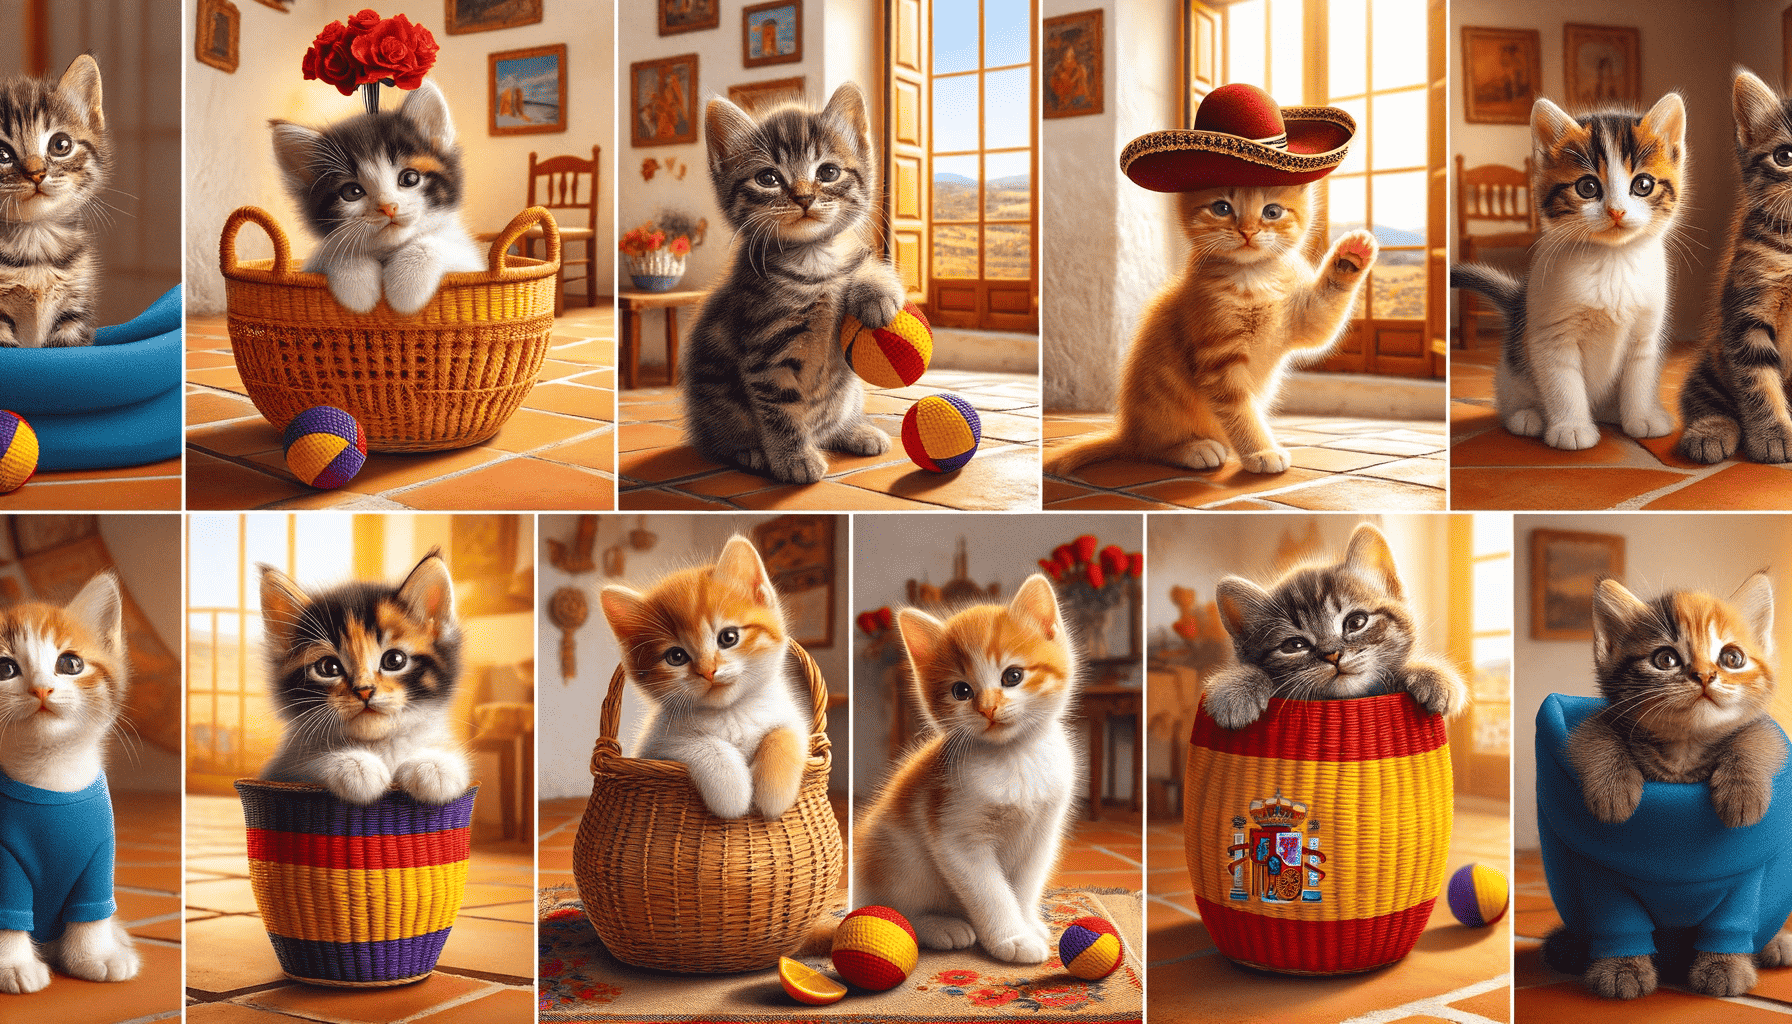 Varios gatitos jugando con temas españoles en una habitación soleada, evocando la cultura y la calidez de España